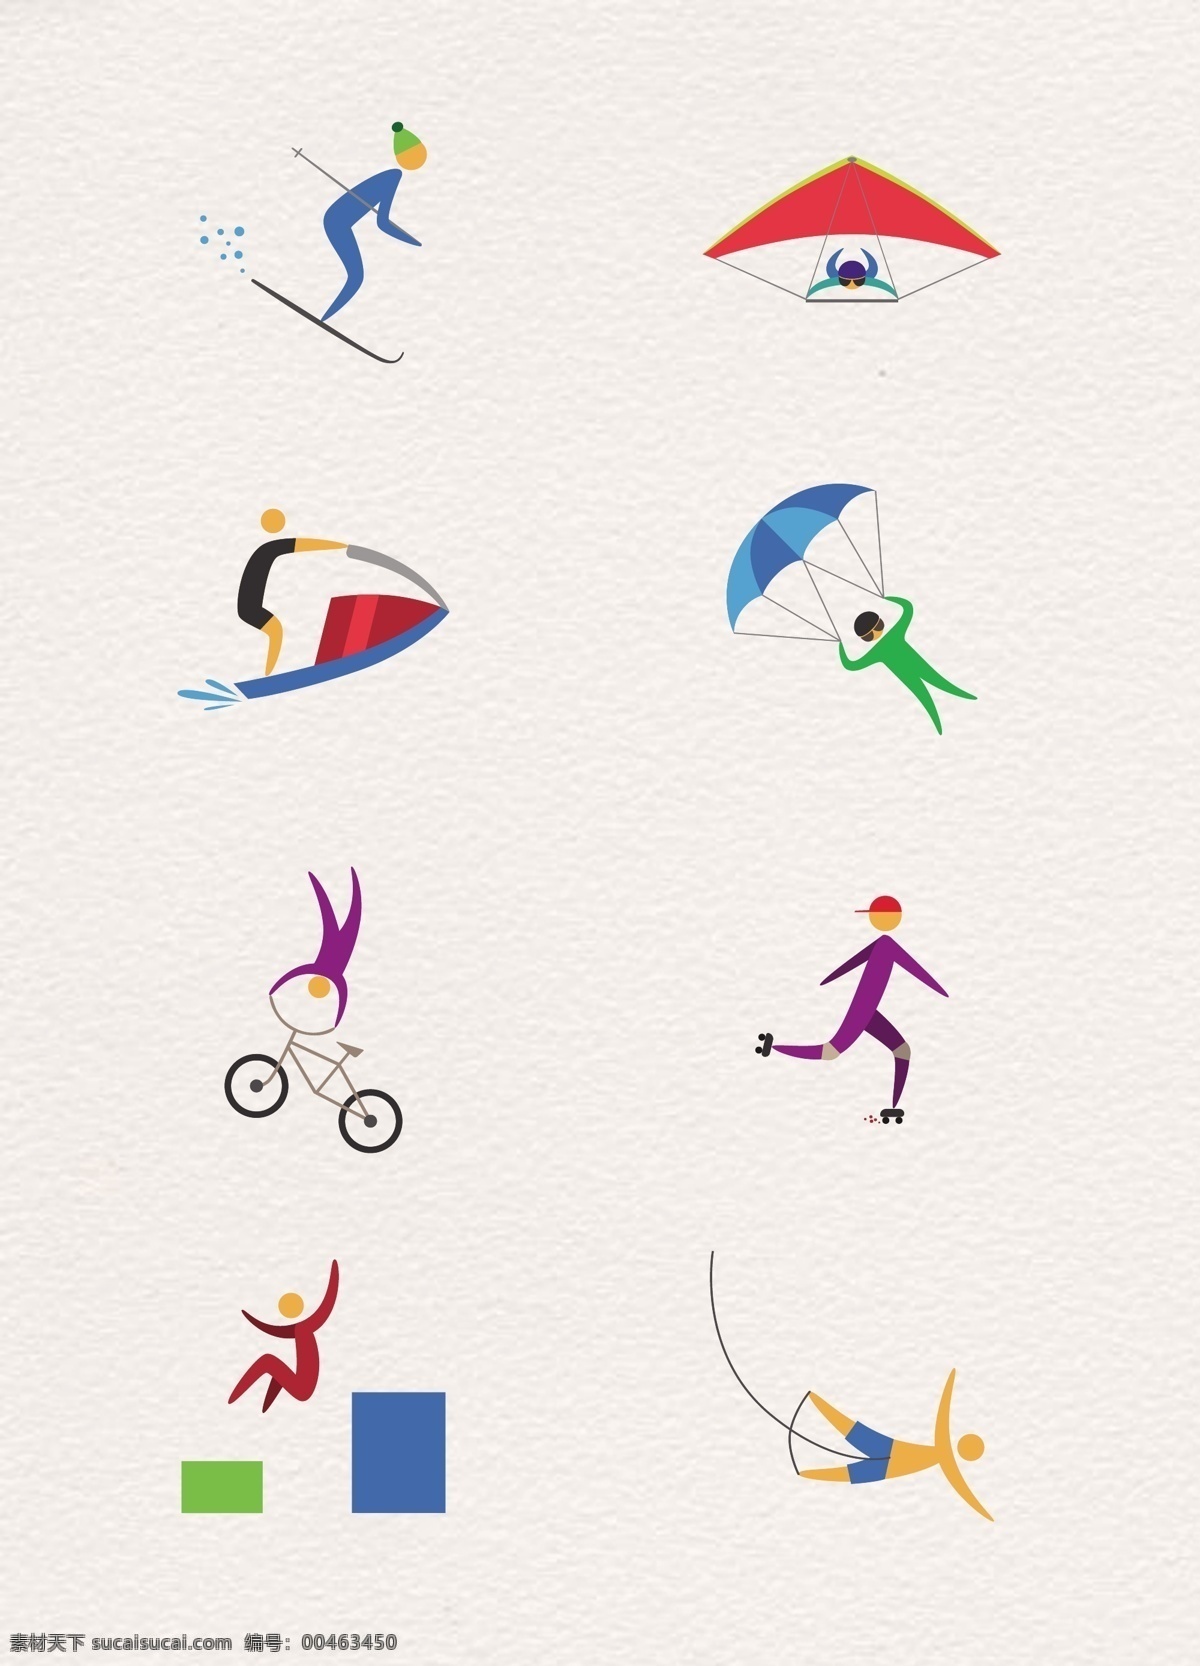 简洁 极限运动 人物 图标 元素 扁平化 运动 自行车 彩色 体育 滑雪 滑翔伞 降落伞 冲浪 溜冰 蹦极